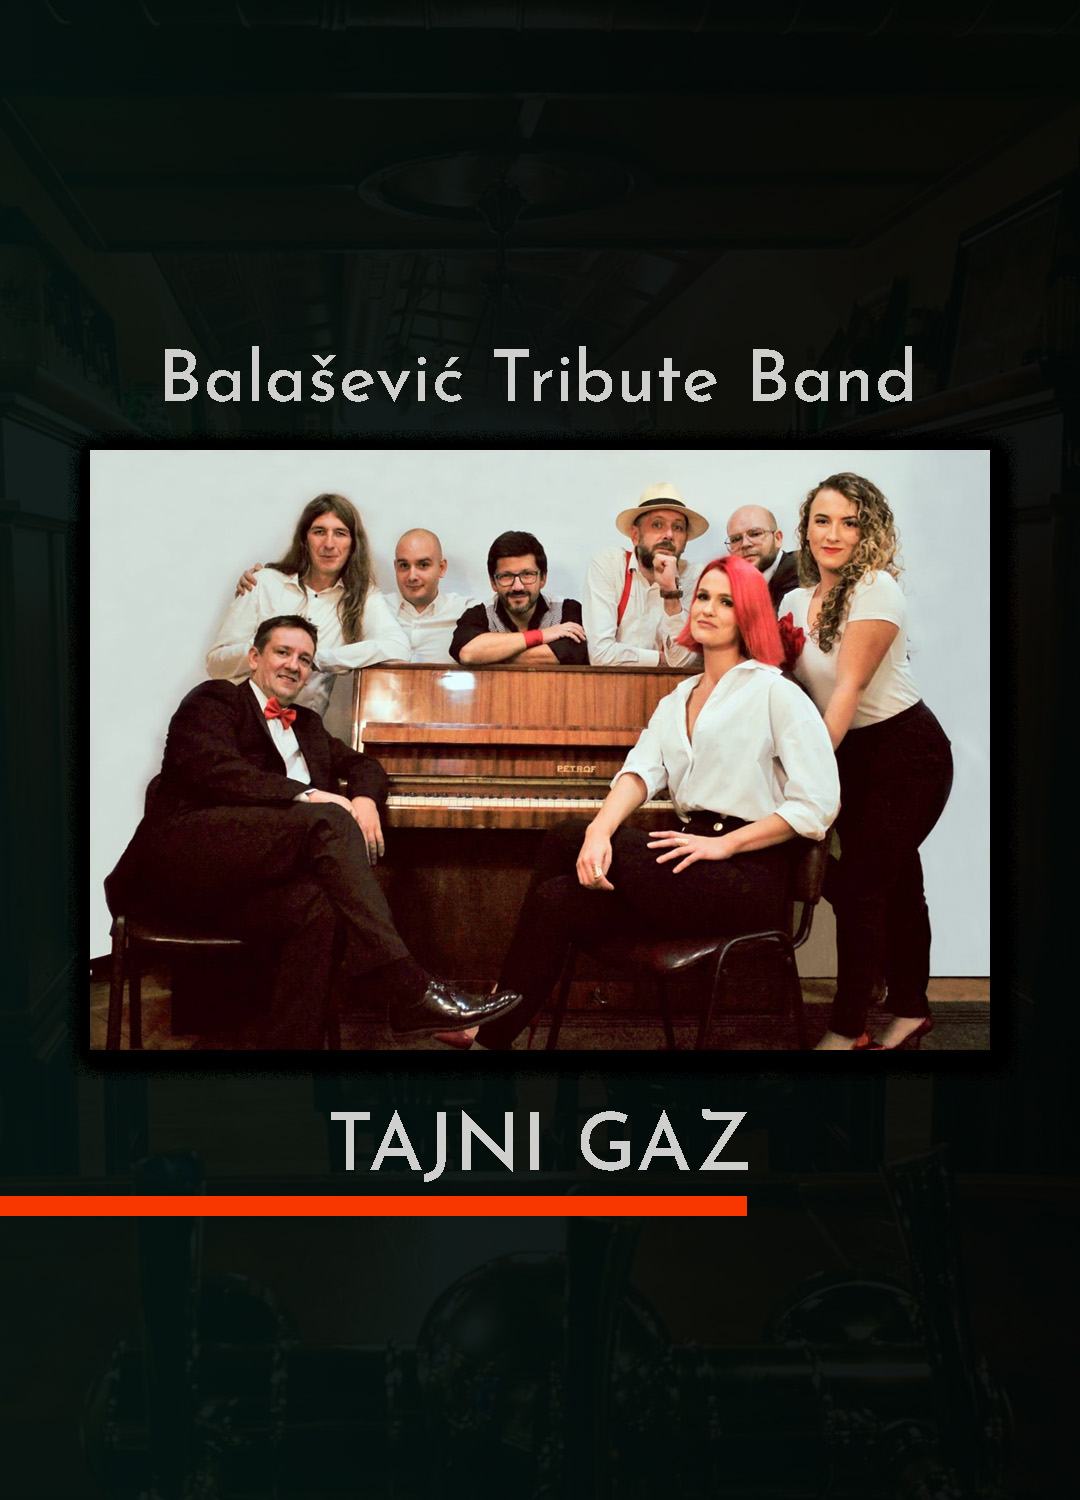 Tajni Gaz - Balašević Tribute Band